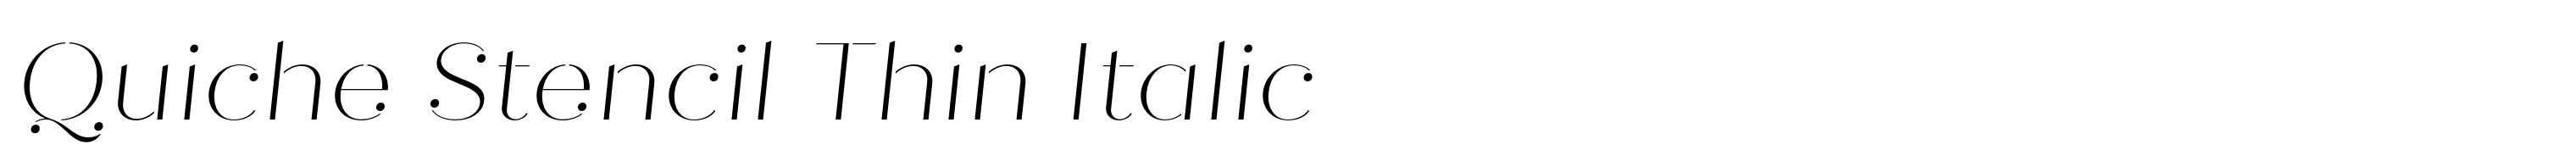 Quiche Stencil Thin Italic